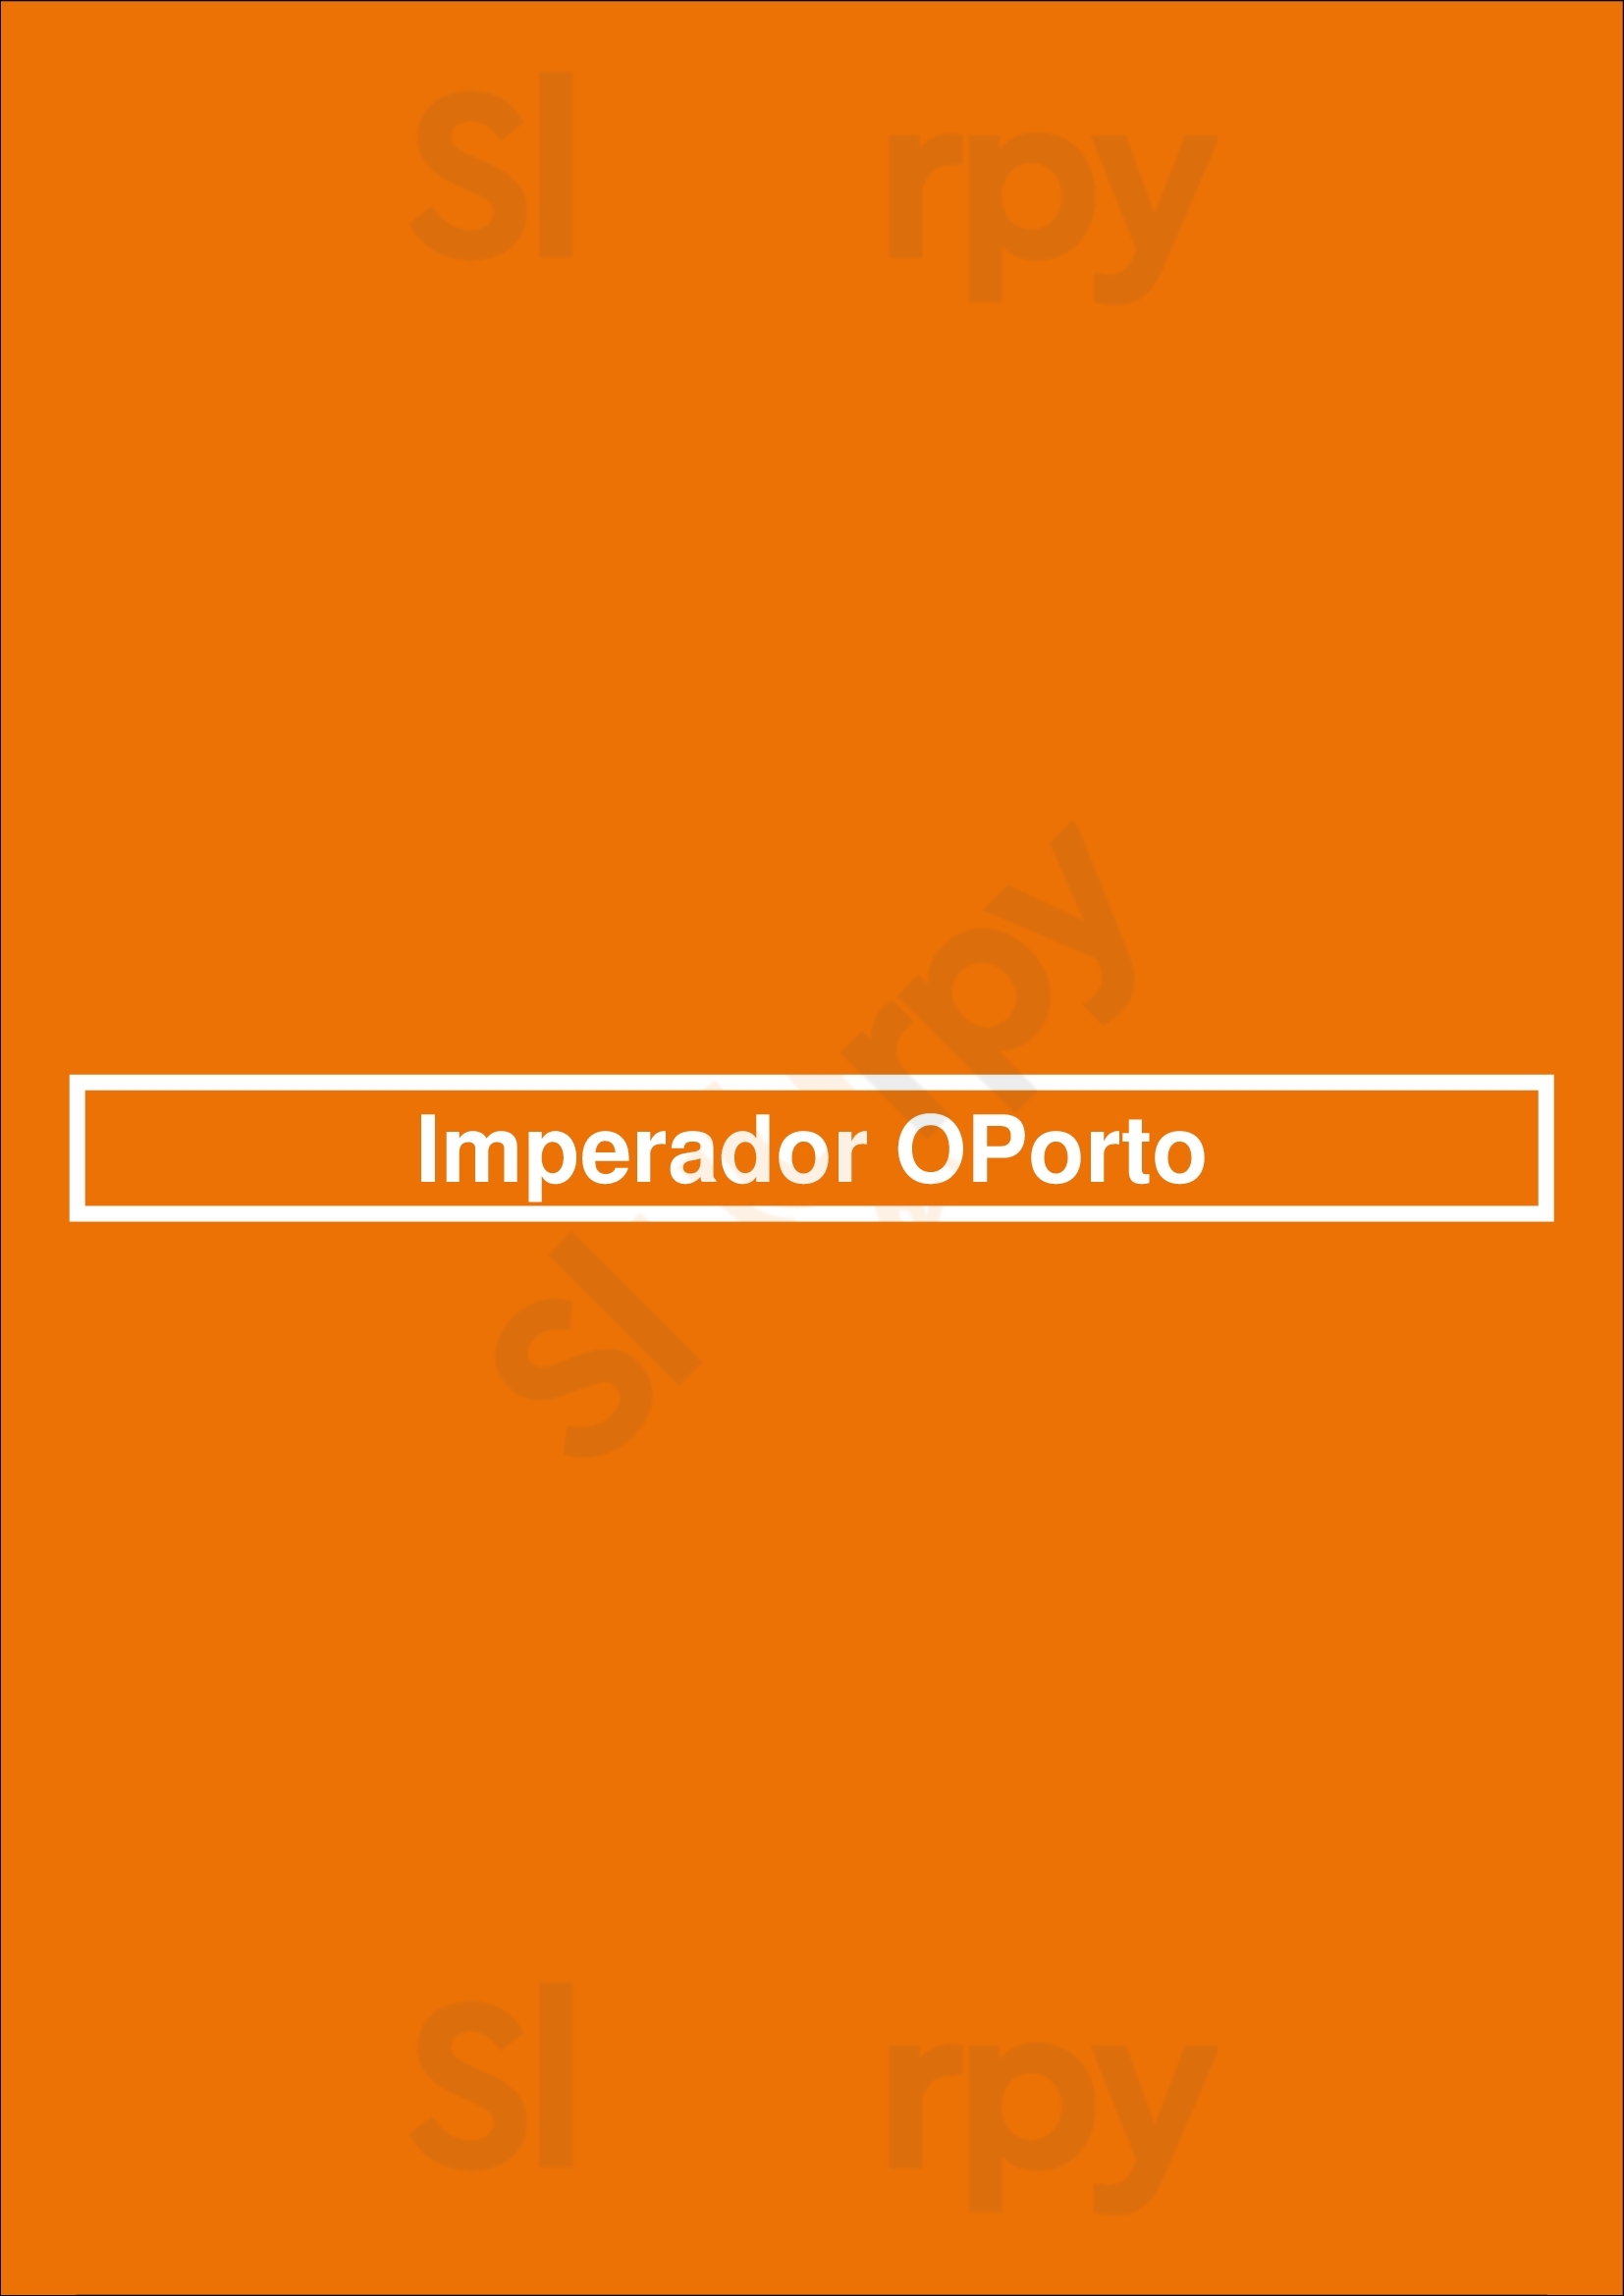 Imperador Oporto Porto Menu - 1